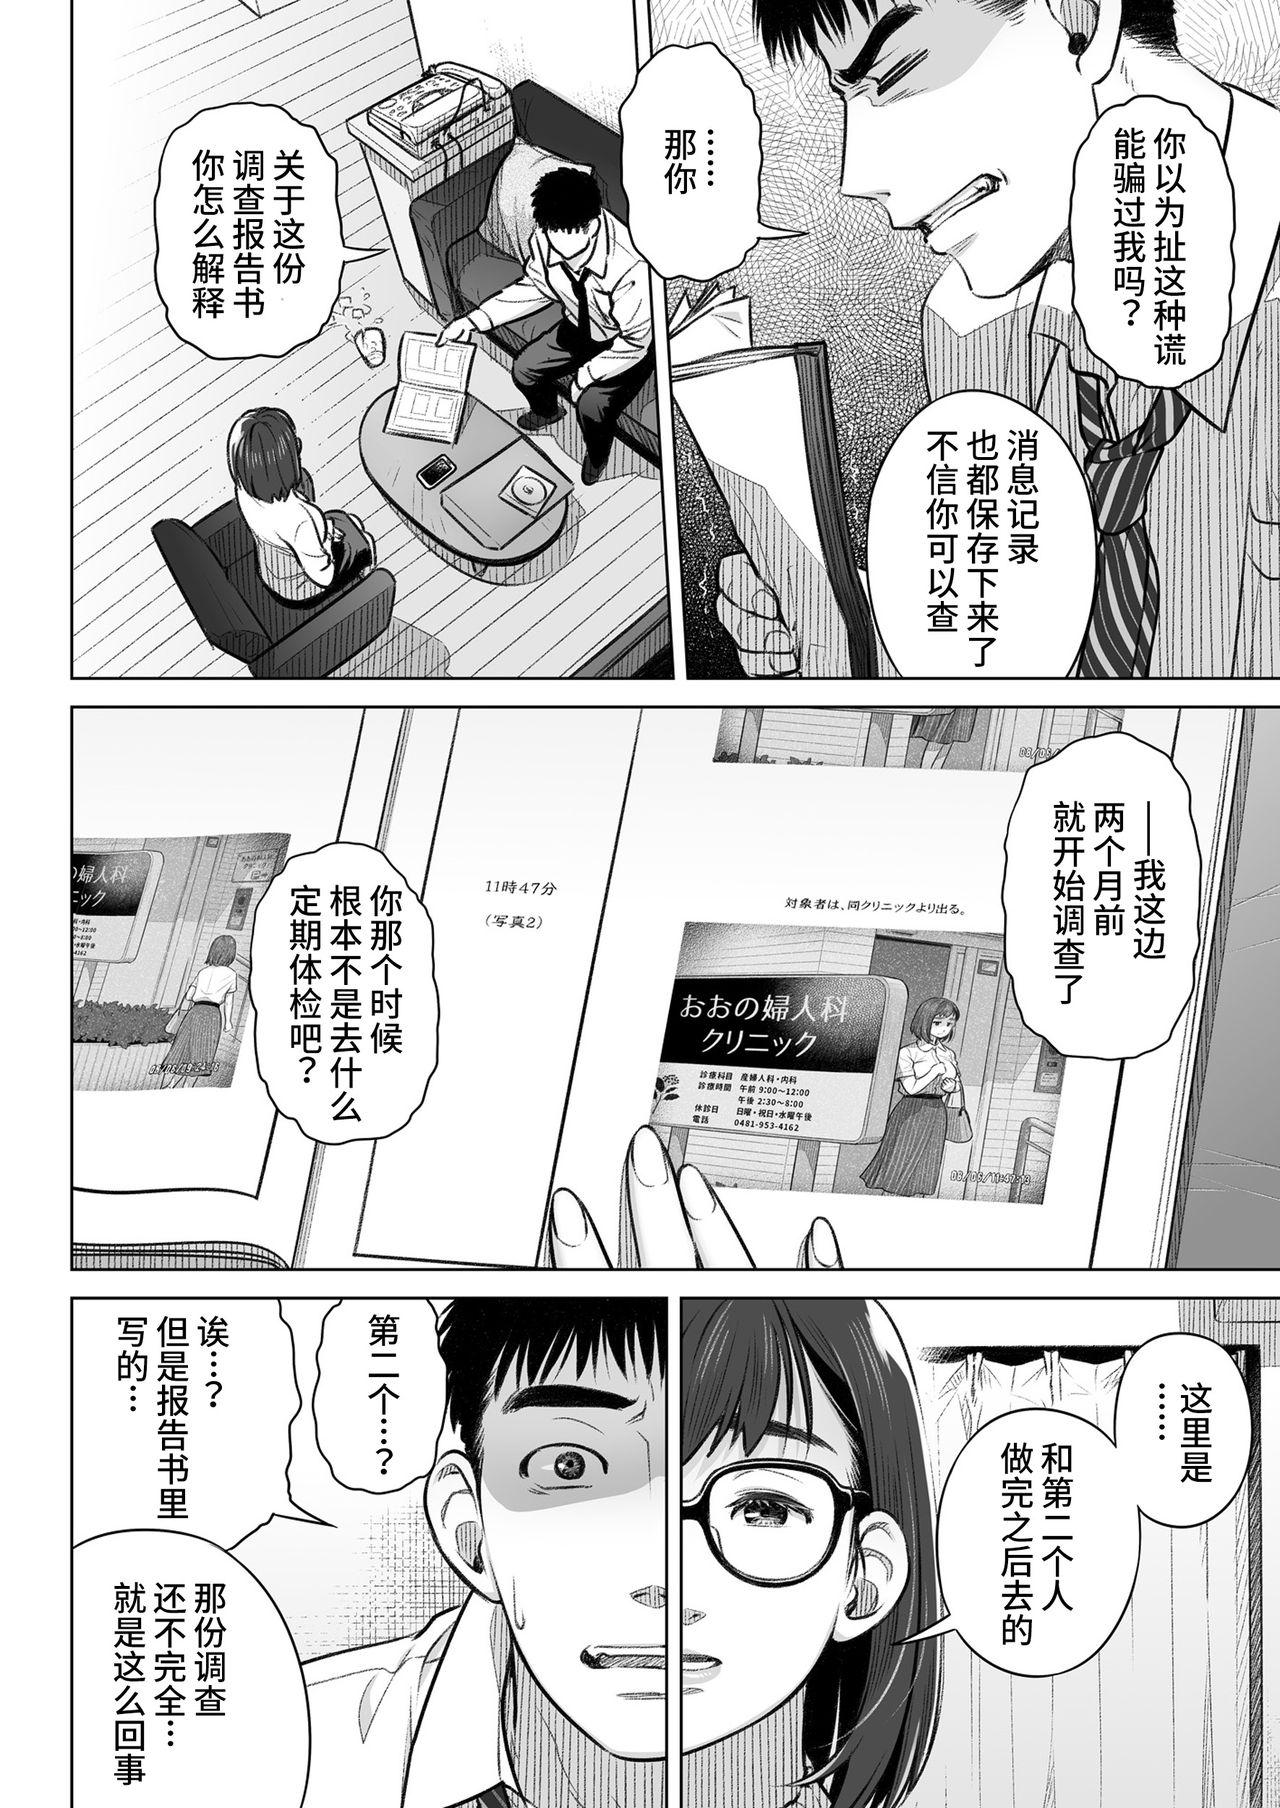 Culazo Kurata Akiko no Kokuhaku 1 - Confession of Akiko kurata Epsode 1 | 仓田有稀子的告白 第1话 - Original Rico - Page 7